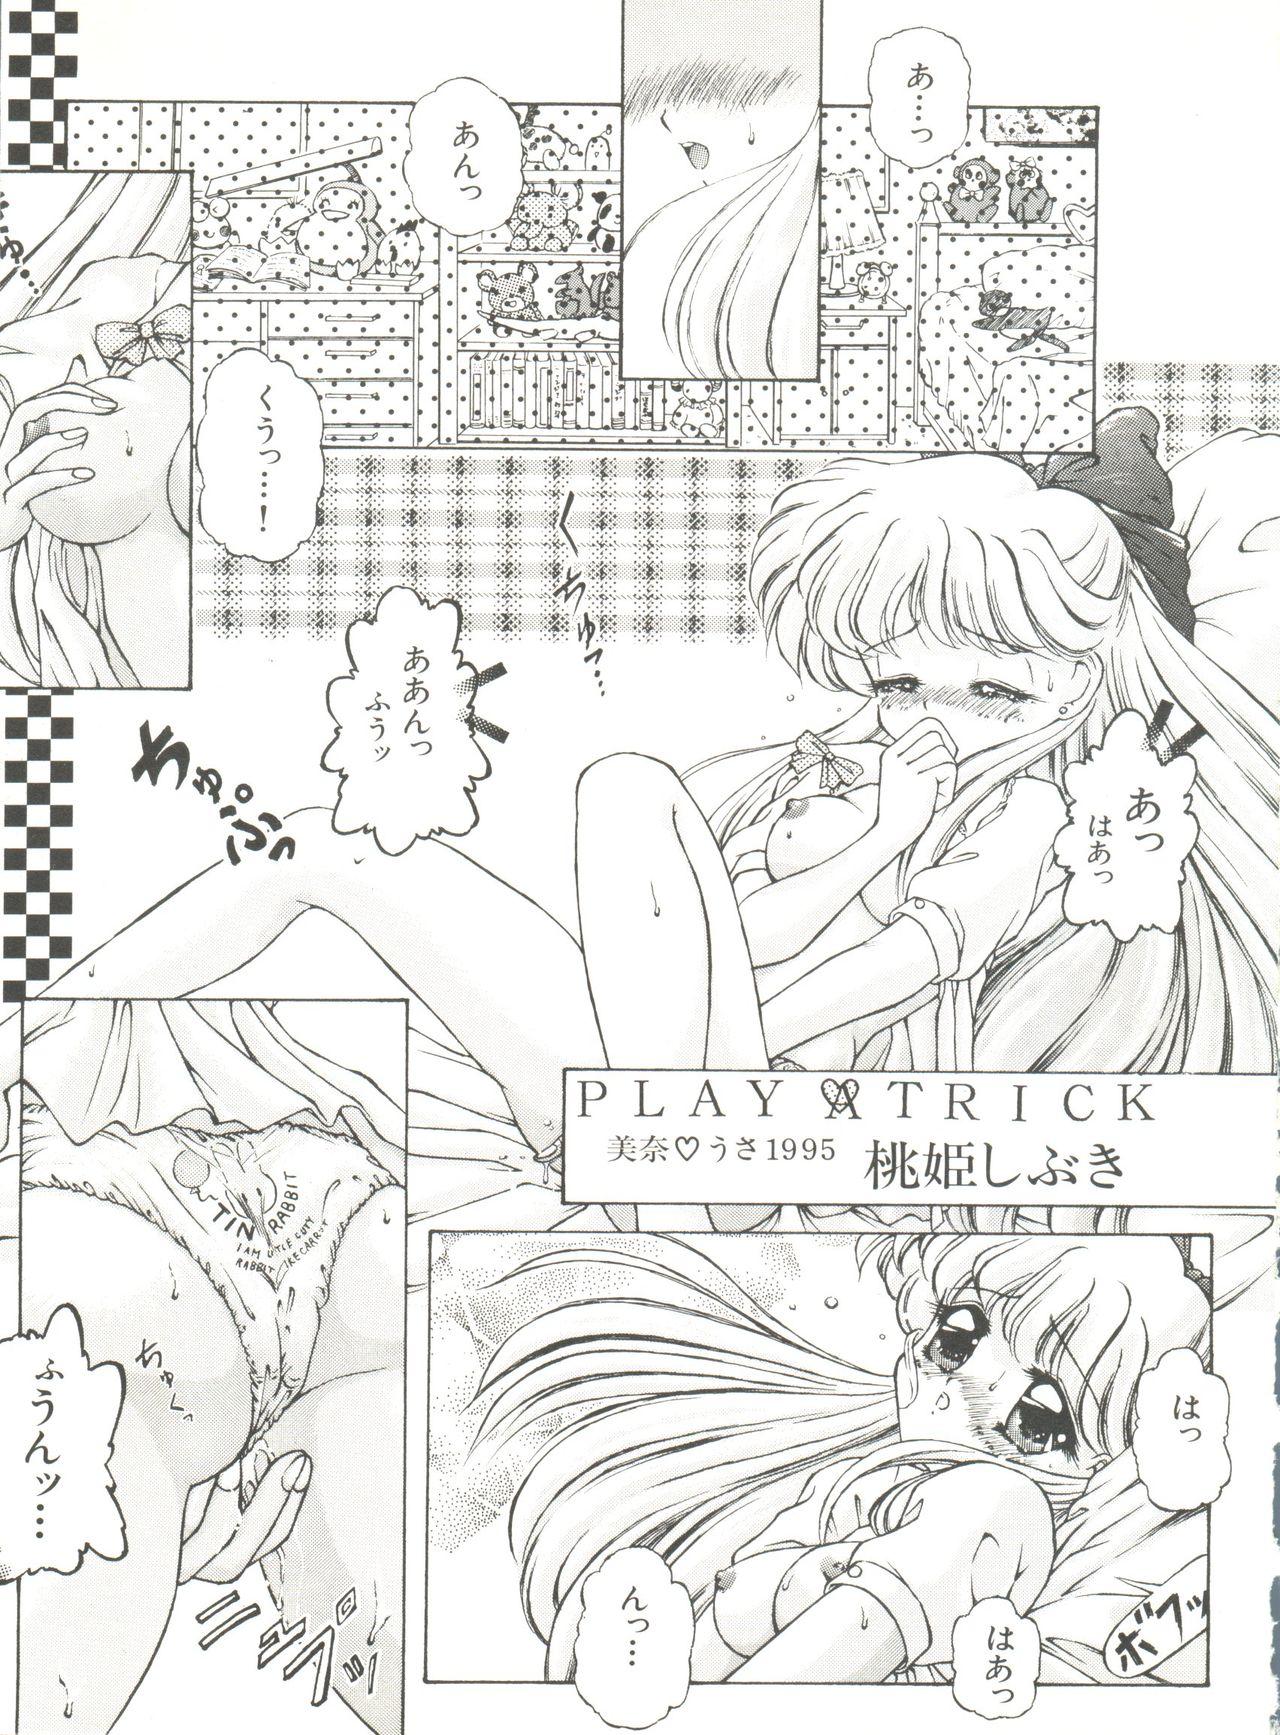 Bishoujo Doujinshi Anthology 8 - Moon Paradise 5 Tsuki no Rakuen 81